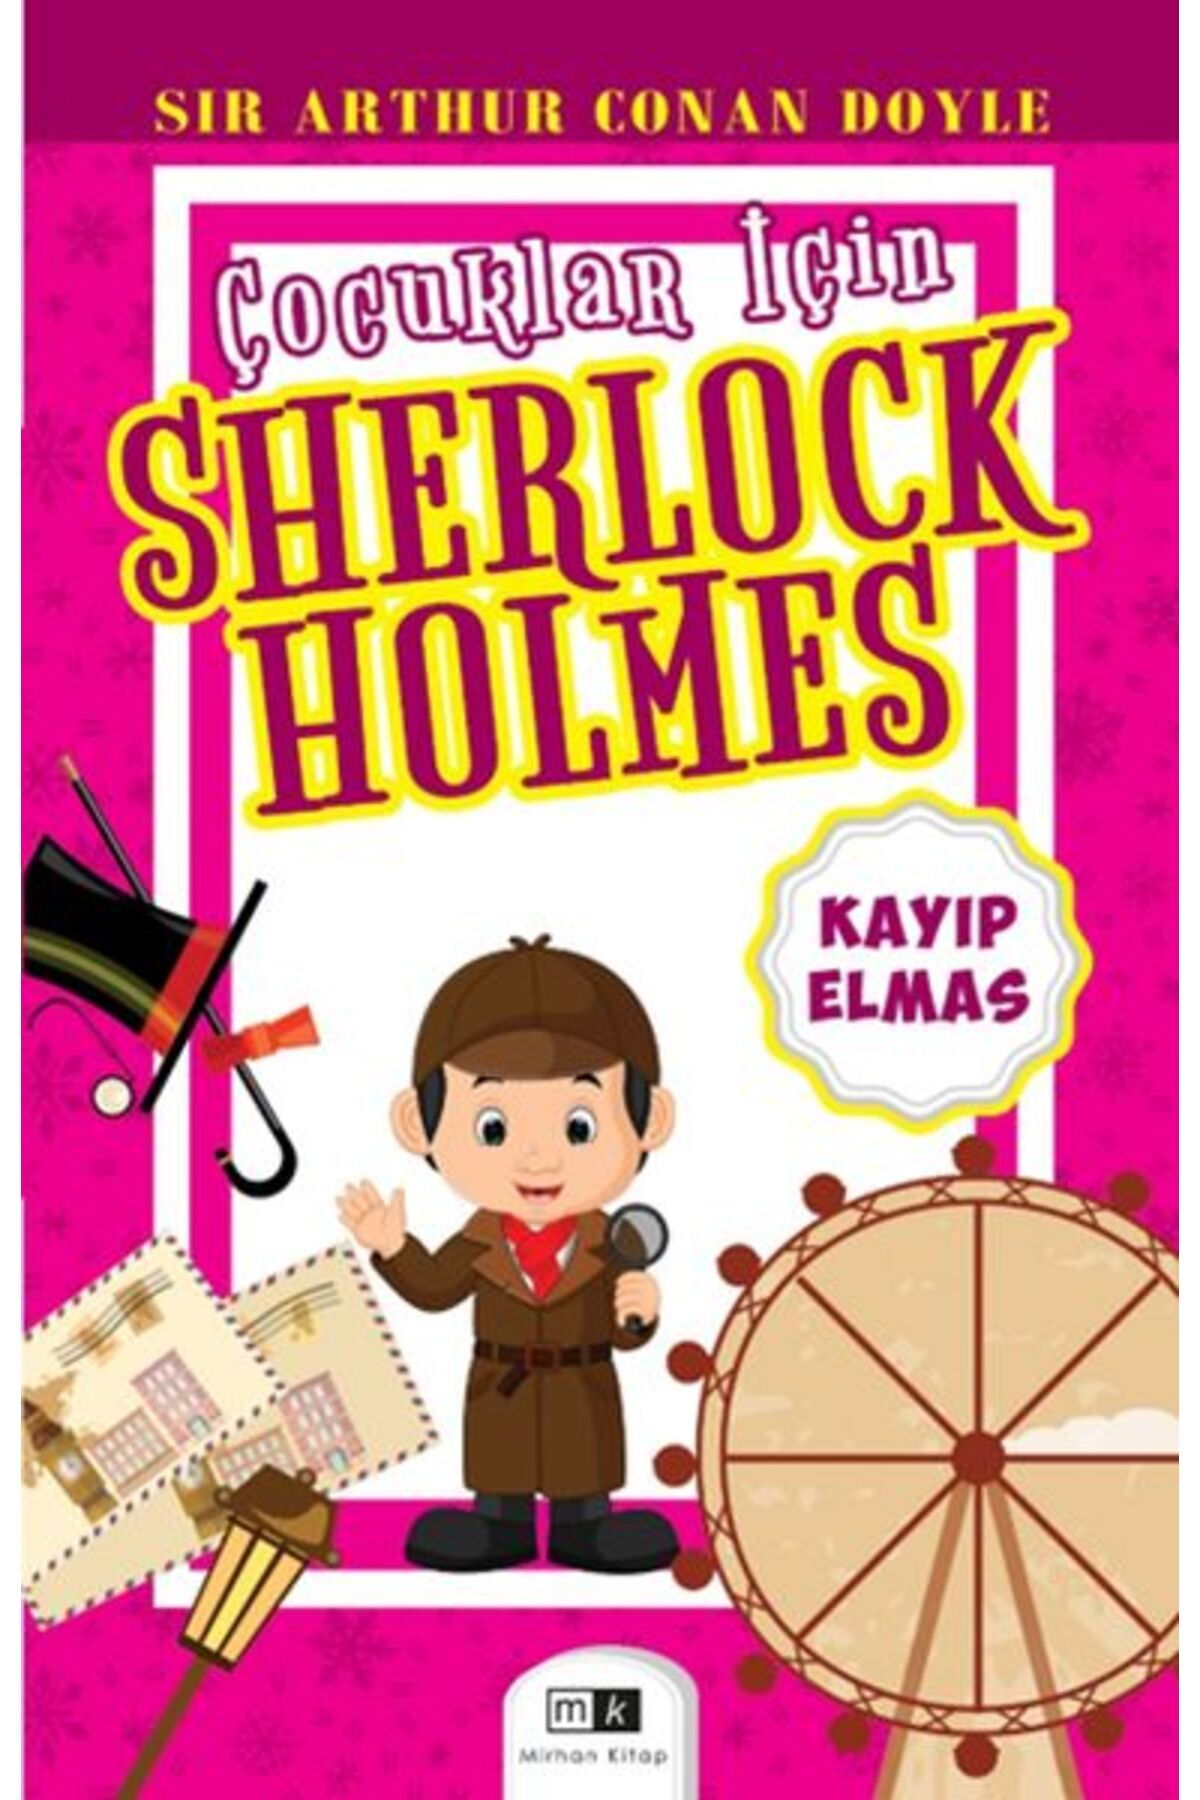 Mirhan Kitap Çocuklar İçin Sherlock Holmes - Kayıp Elmas Mirhan Kitap (Korunaklı Poşetle)